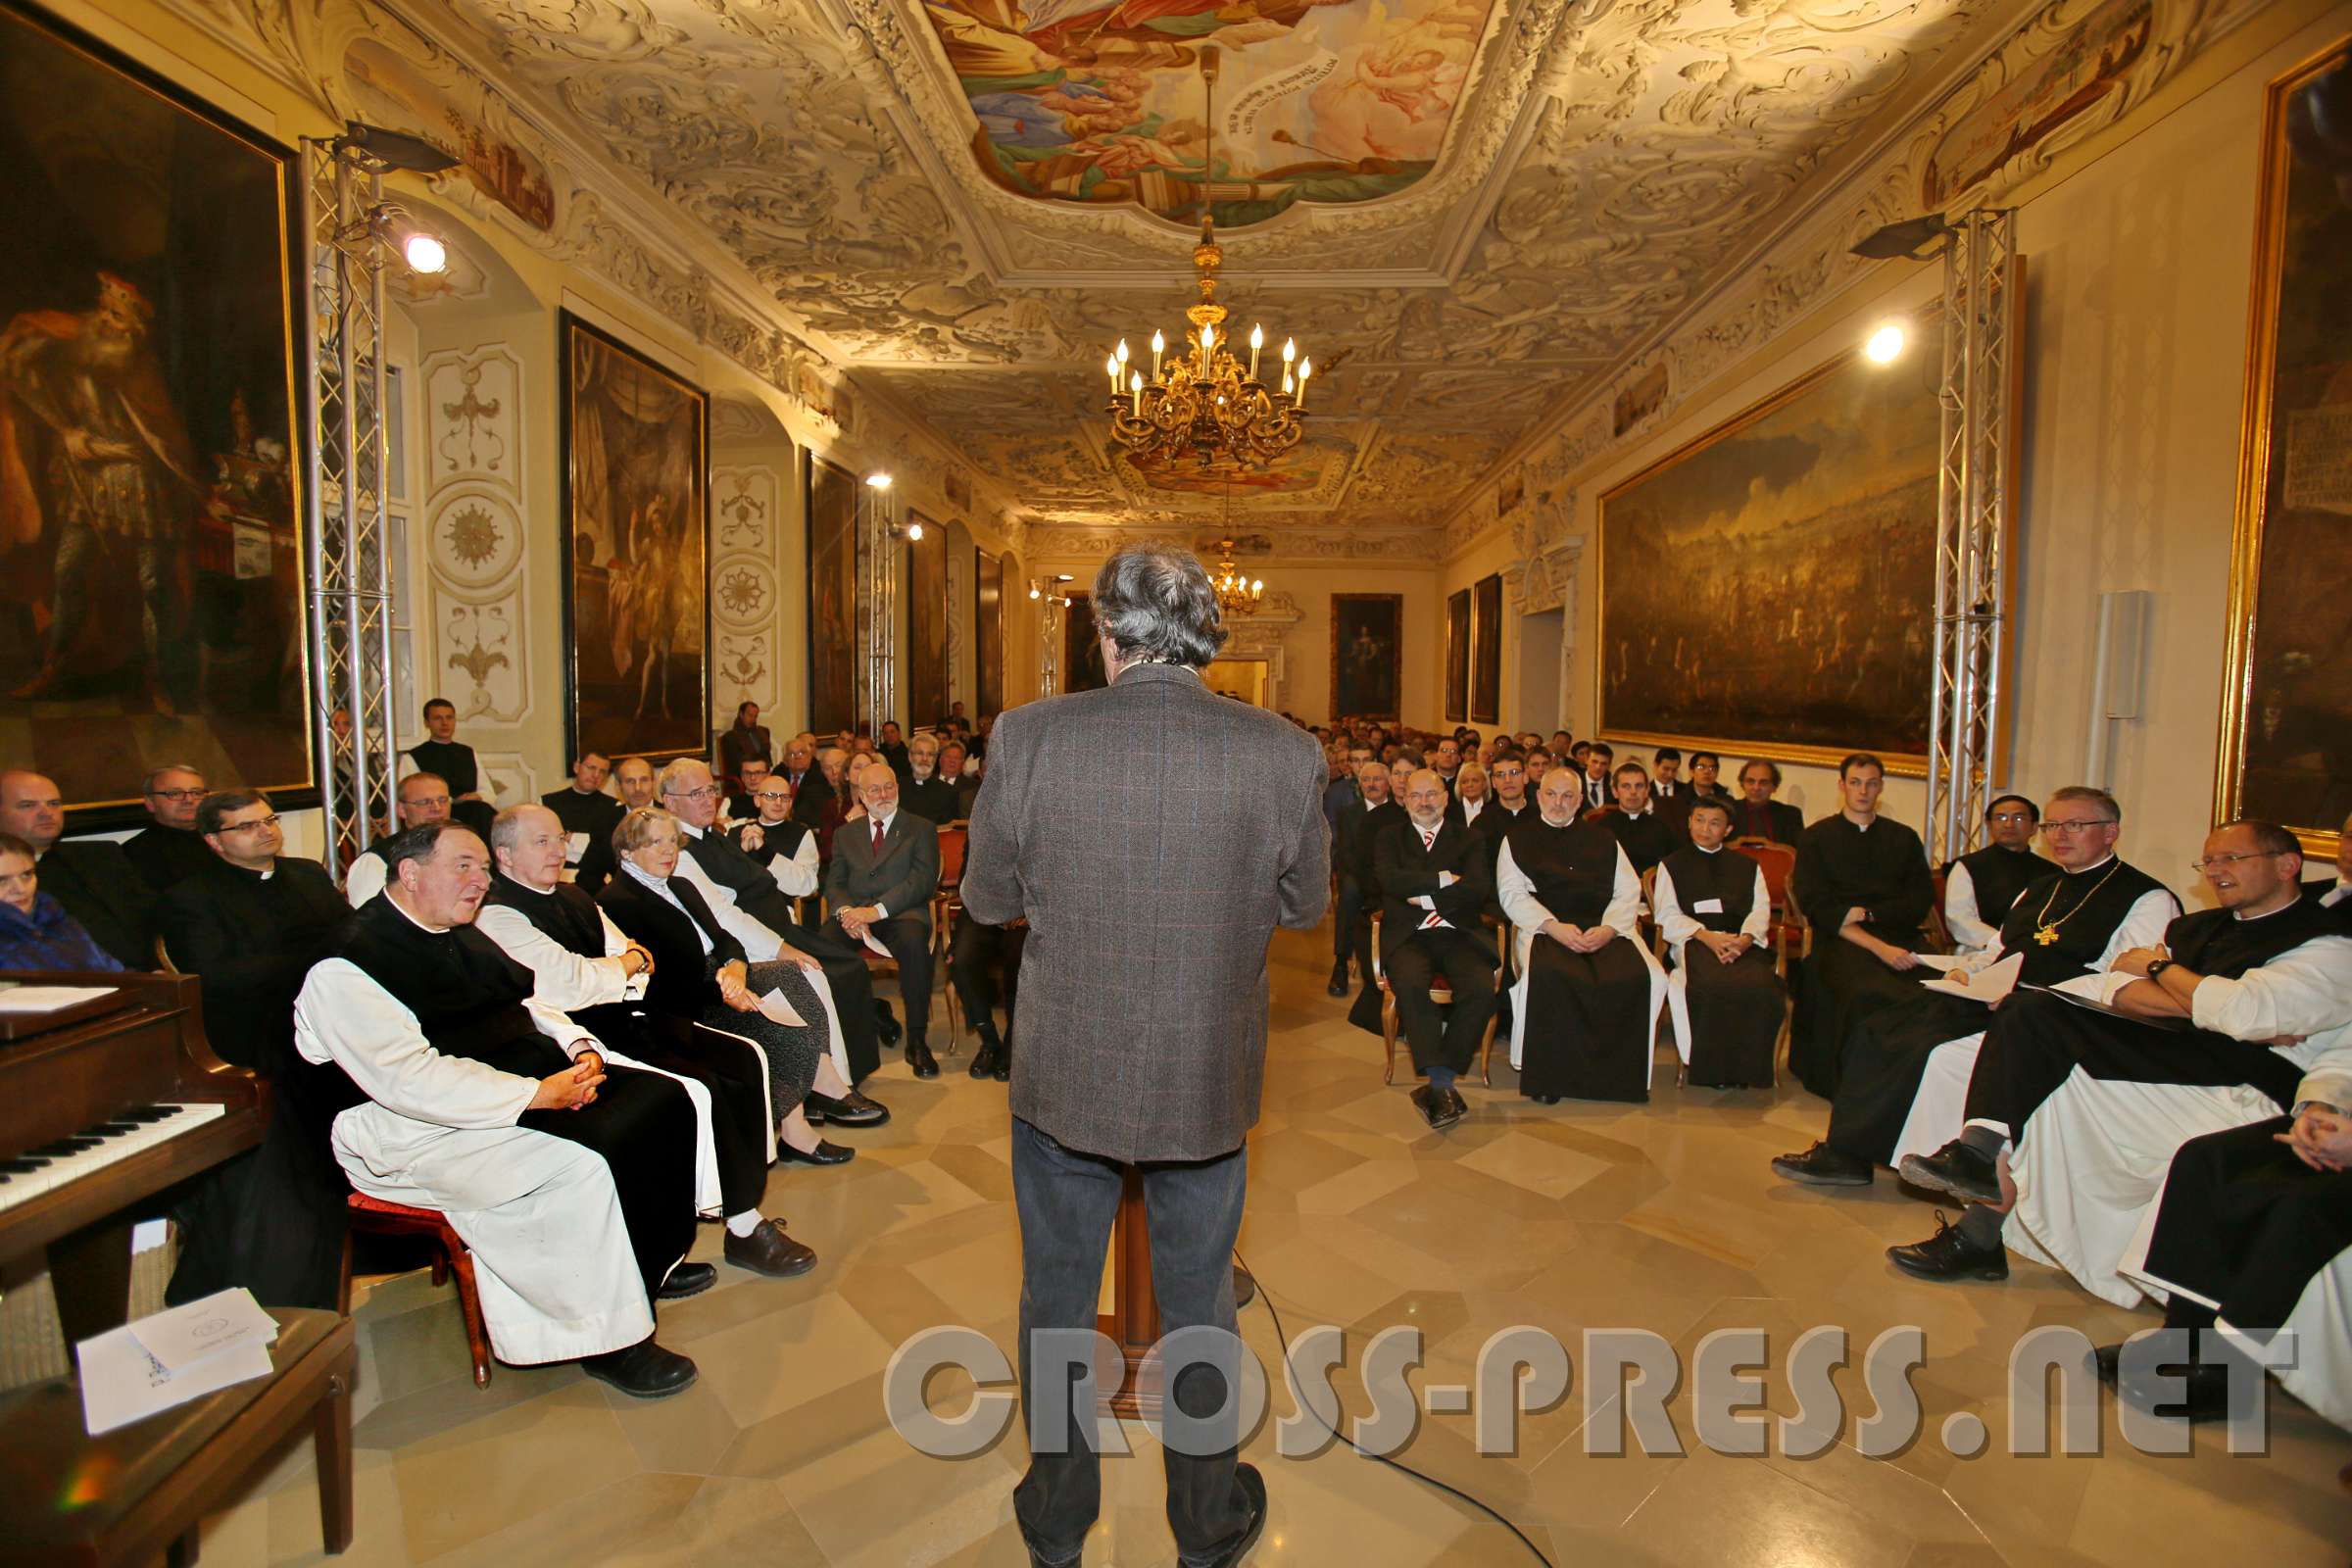 Sponsionsfeier der Phil.-Theol. HS "Benedikt XVI." Die akademische Feier fand im Kaisersaal statt. Hier Dr. Holubar bei seinem Vortrag.